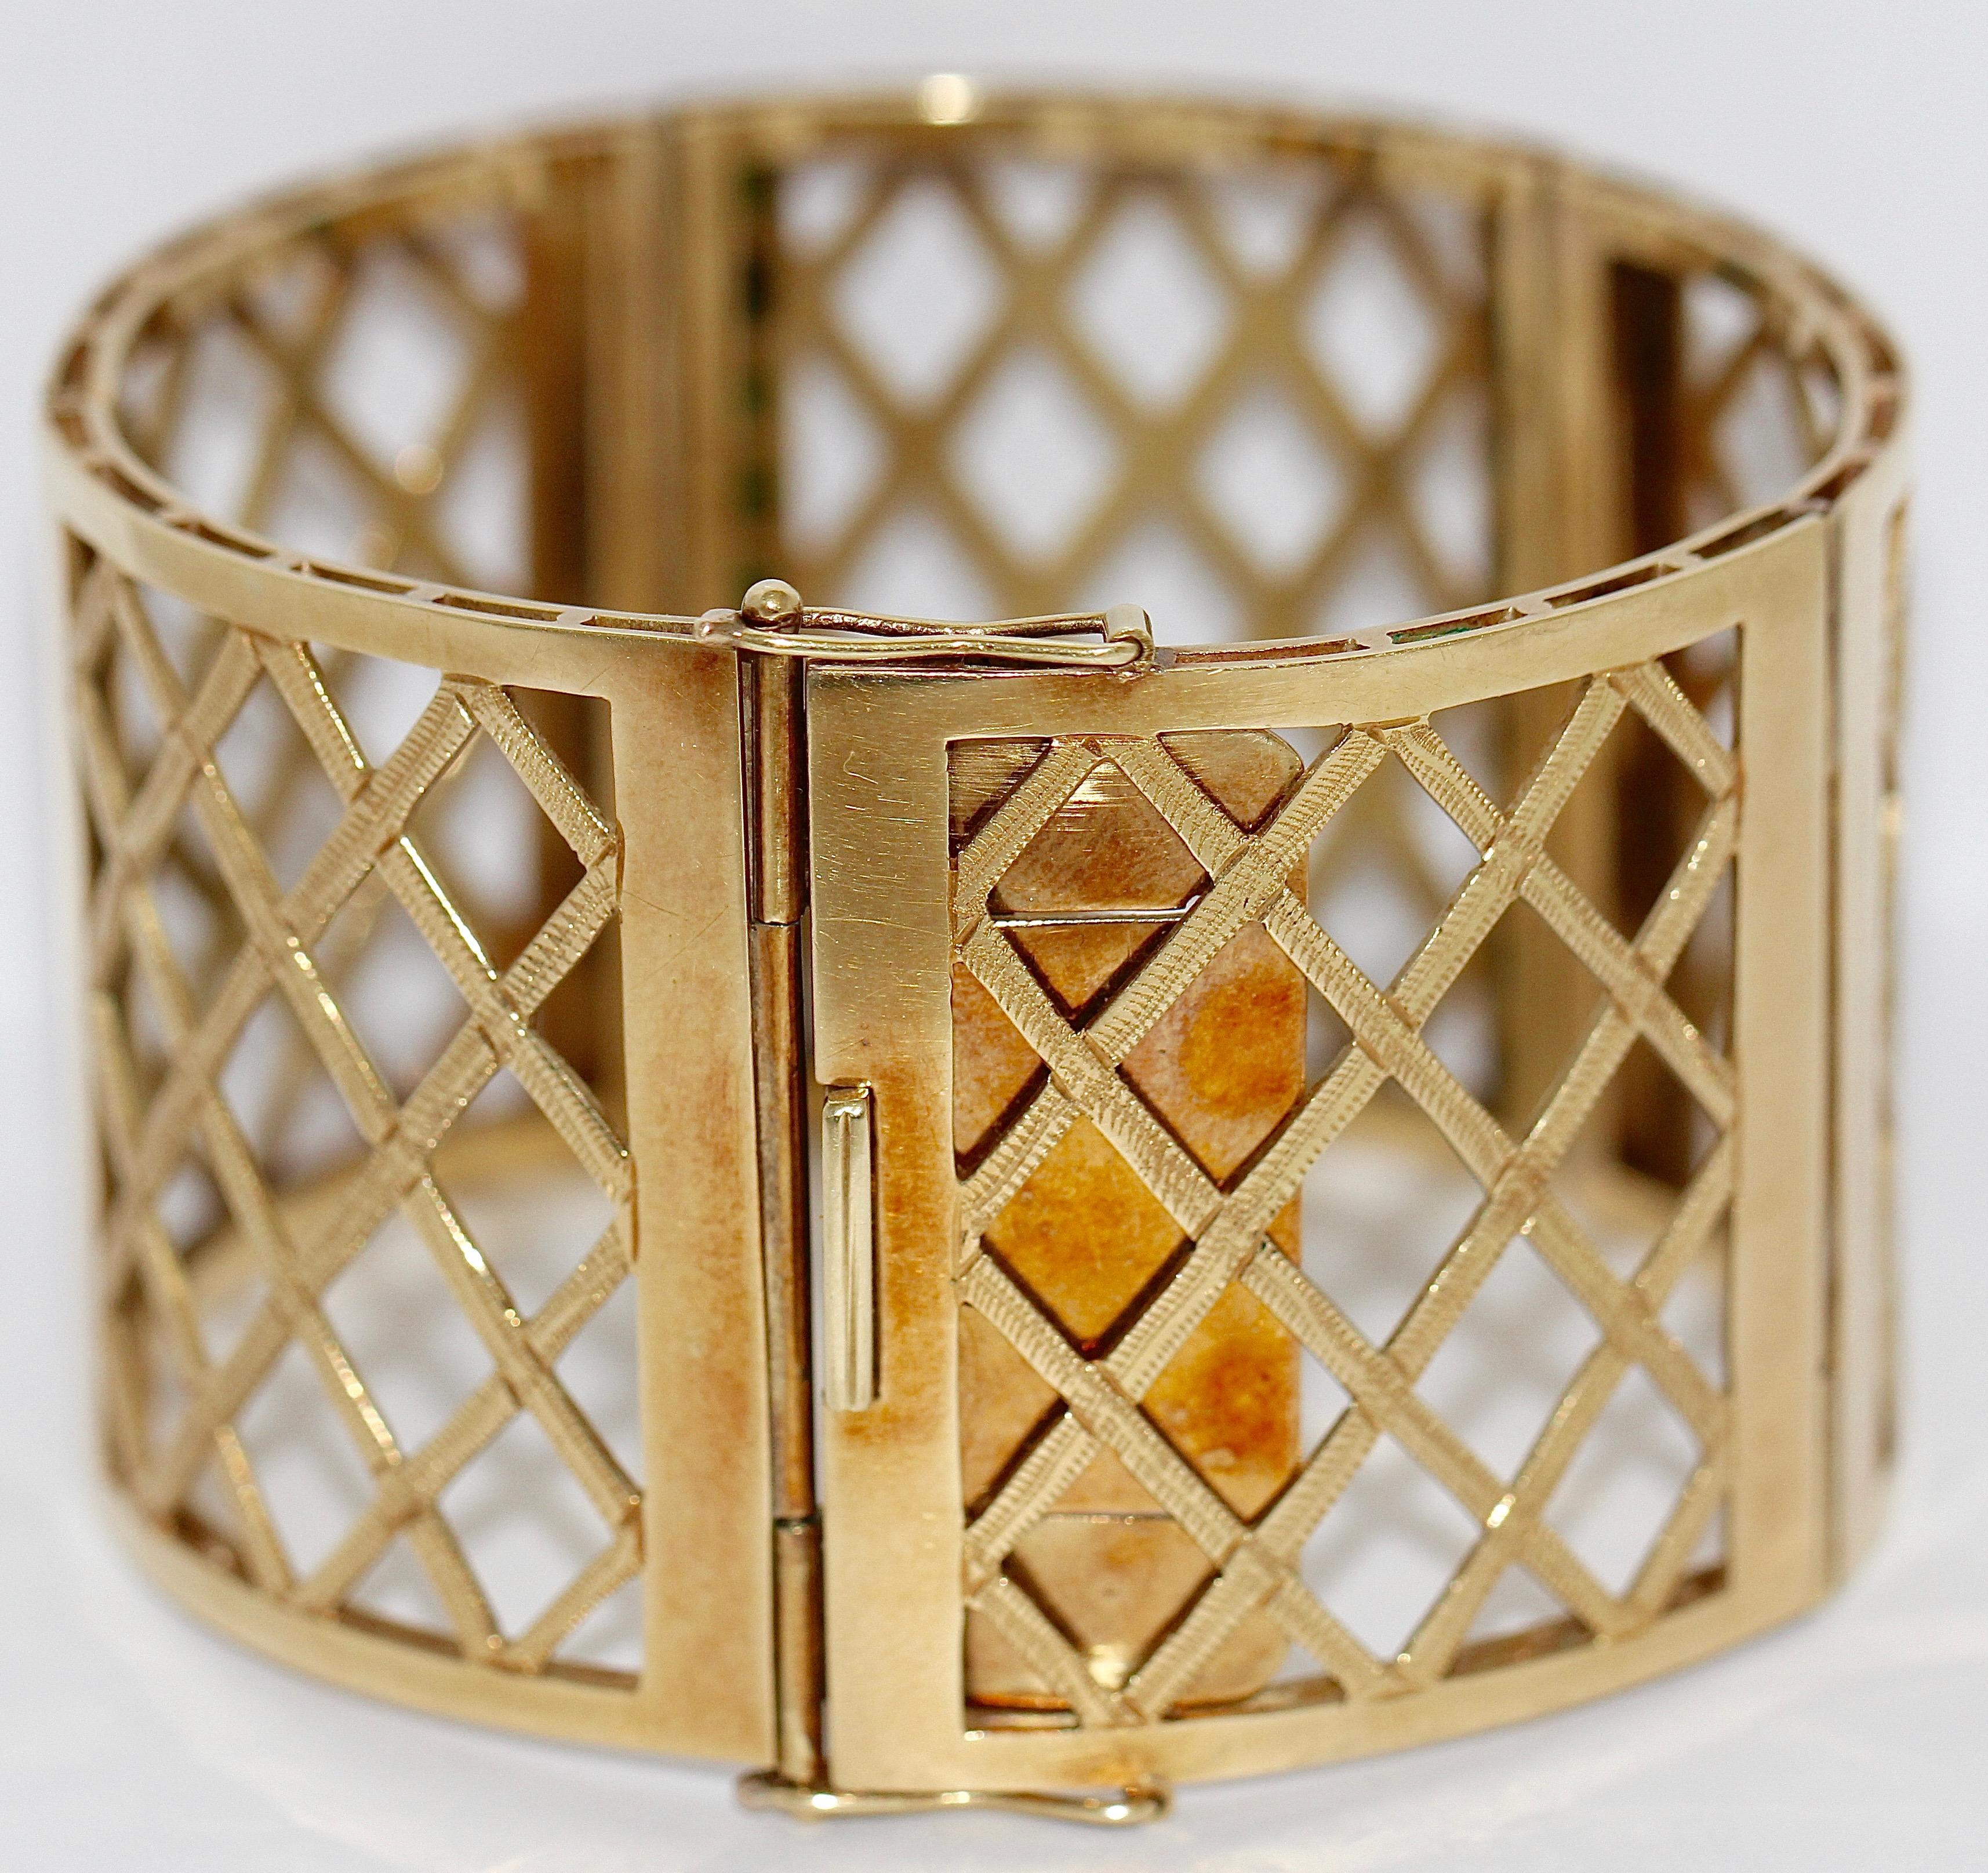 vintage gold bracelet